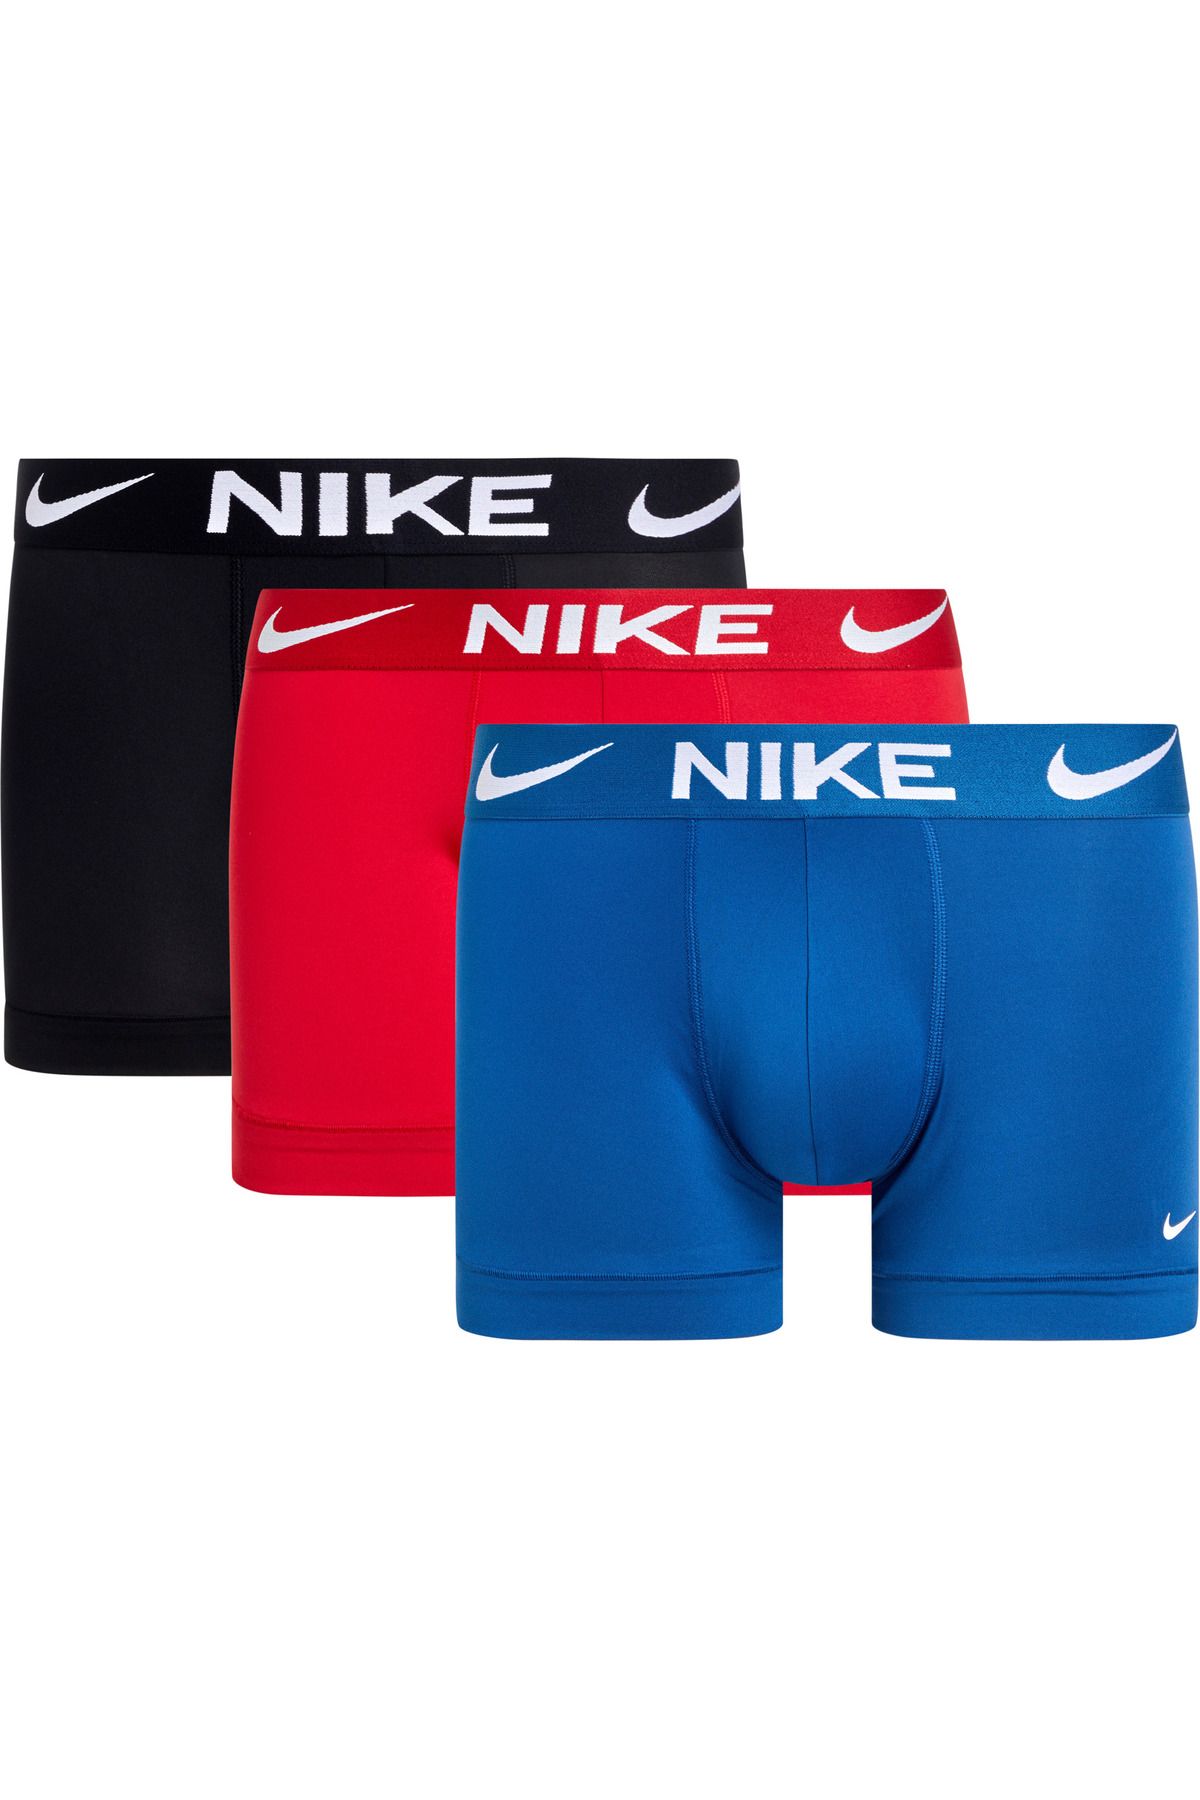 Nike Erkek Marka Logolu Elastik Bantlı Günlük Kullanıma Uygun Kırmızı-Lacivert-Siyah Boxer 0000KE1156-612